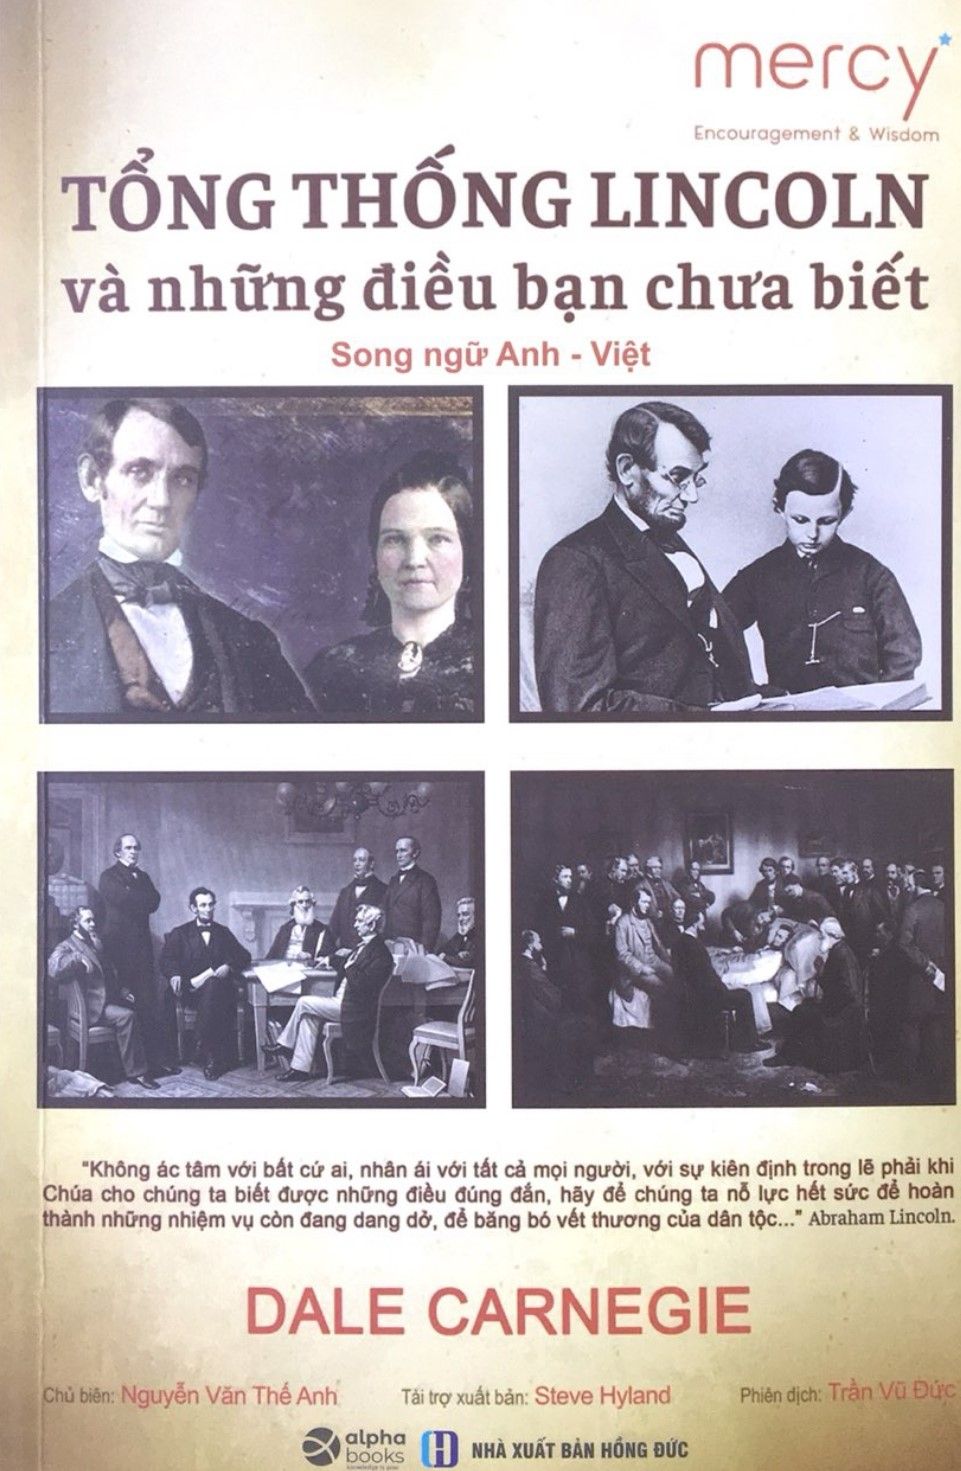  Tổng Thống Lincoln Và Những Điều Bạn Chưa Biết - Song Ngữ Anh - Việt 